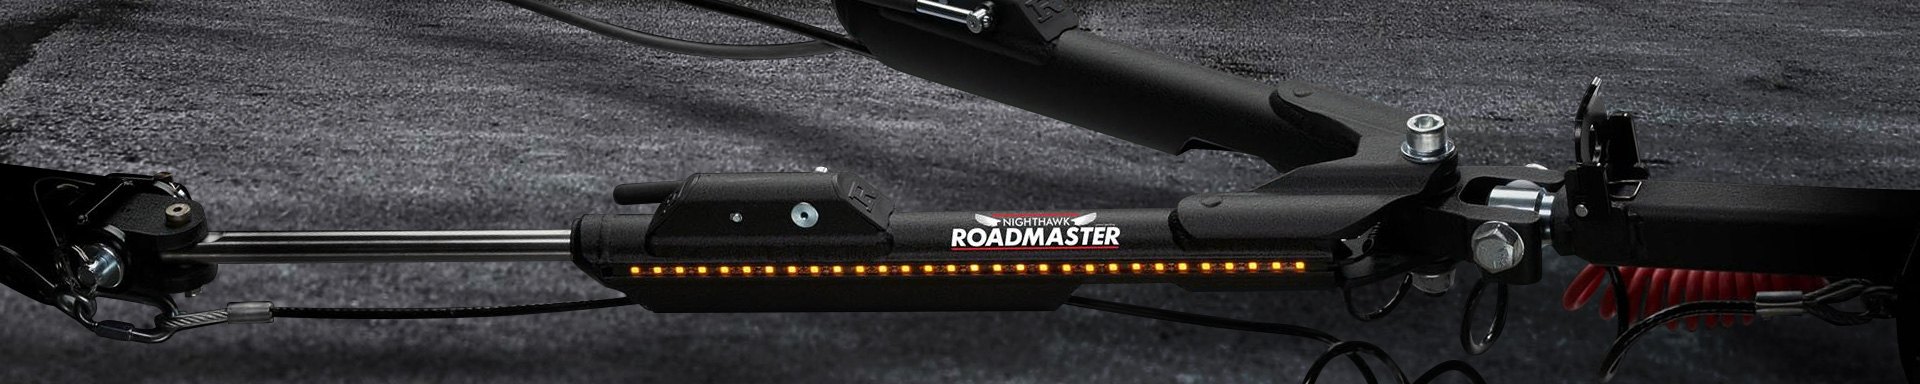 Roadmaster Trailer Lights